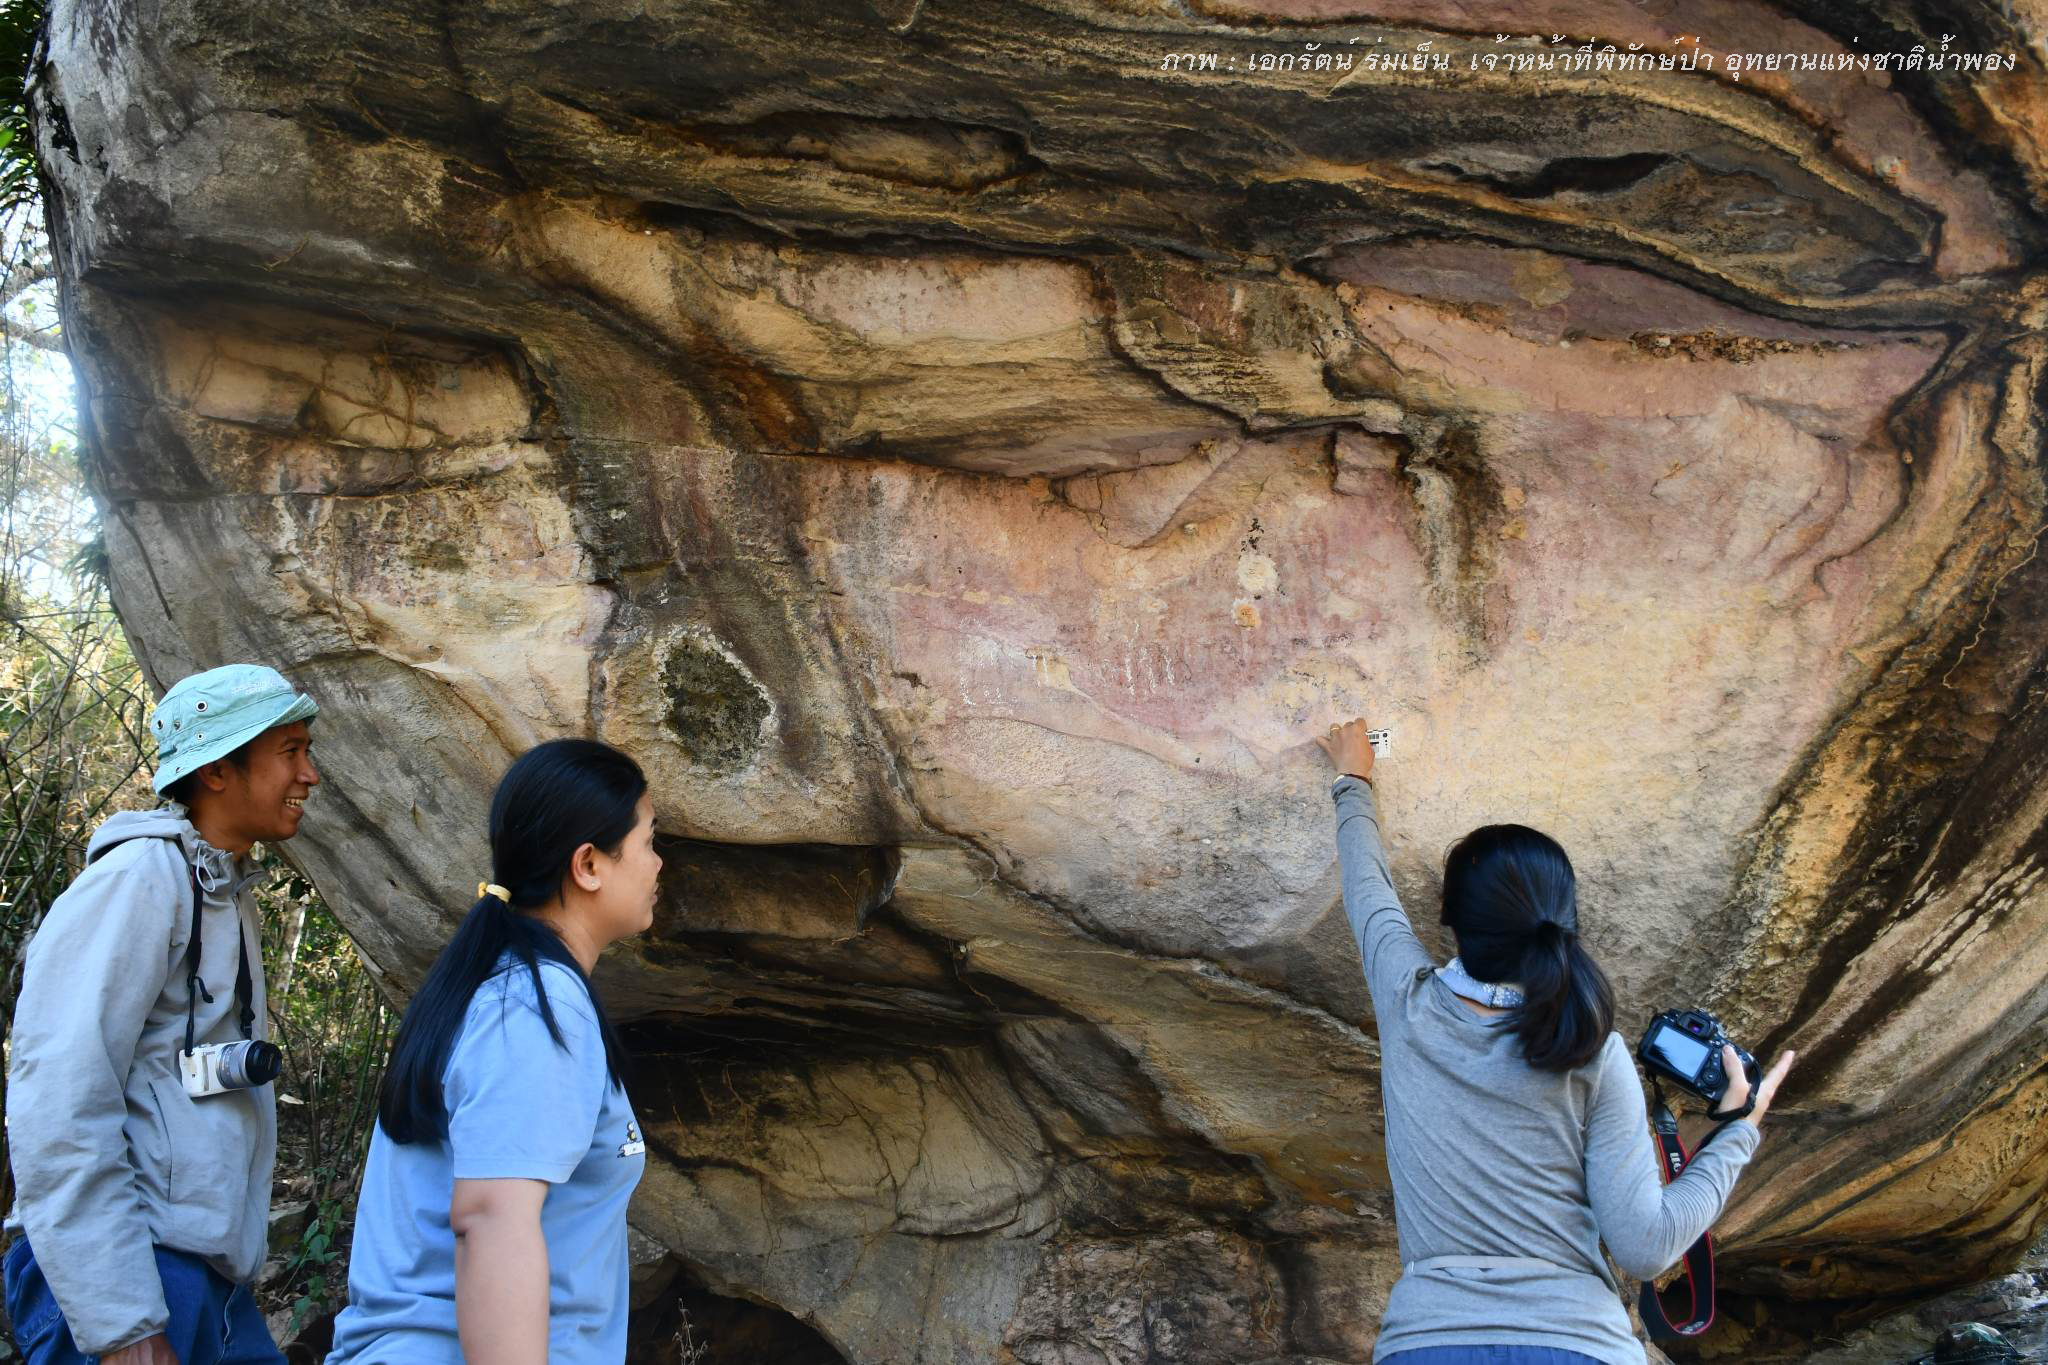 สำรวจแหล่งภาพเขียนสีเพิงหินร่มเย็น ในเขตอุทยานแห่งชาติน้ำพอง จังหวัดขอนแก่น